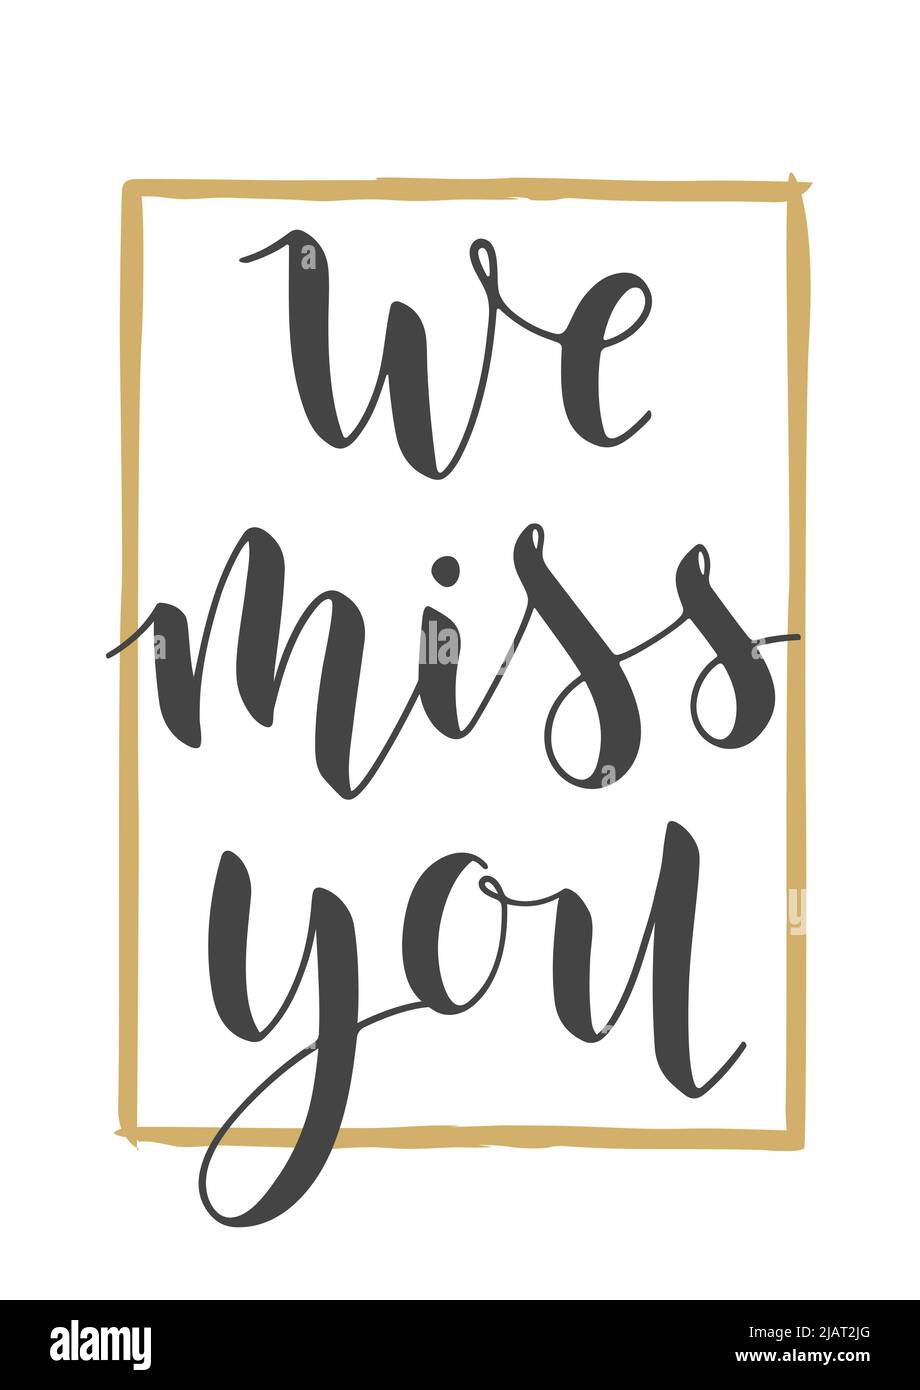 Vektorgrafik. Handgeschriebene Schriftzüge von We Miss You. Vorlage für Banner, Grußkarte, Postkarte, Einladung, Abschiedsfeier, Poster oder Aufkleber Stock Vektor